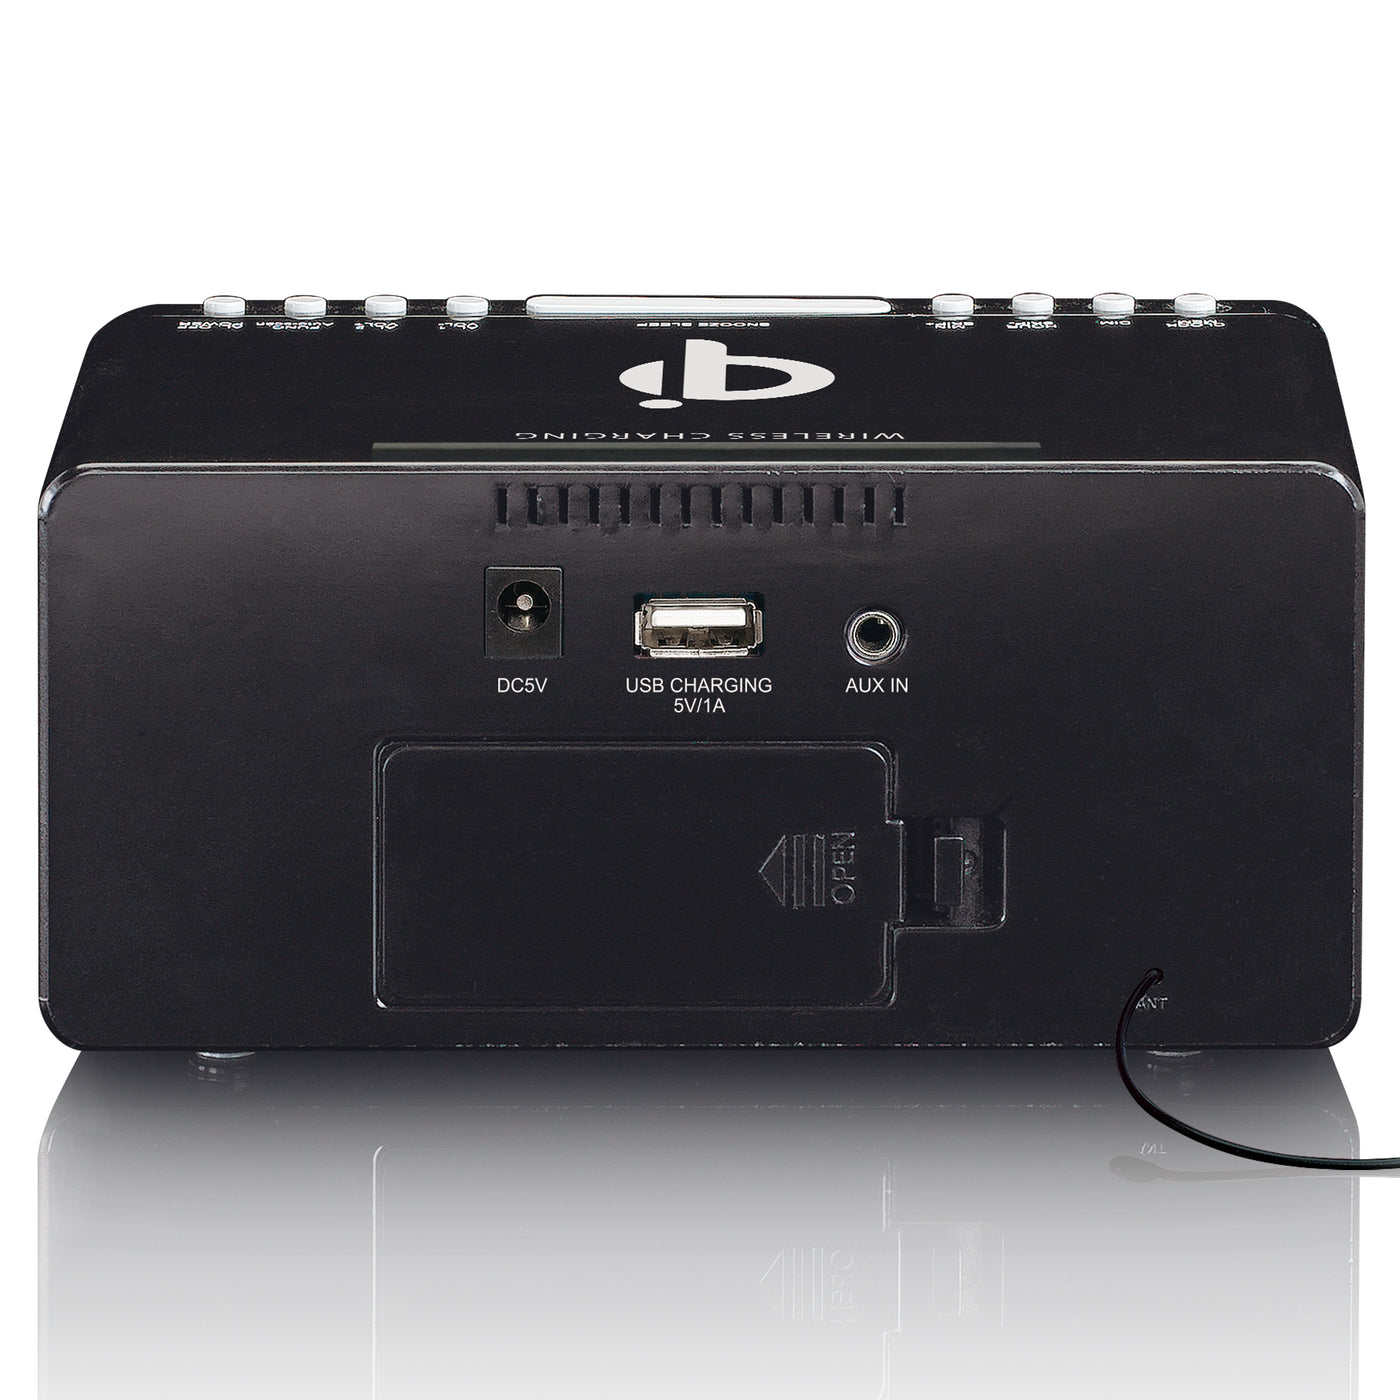 LENCO CR-550BK - Radiobudzik stereofoniczny FM z USB i bezprzewodowym ładowaniem smartfona Qi - Czarny